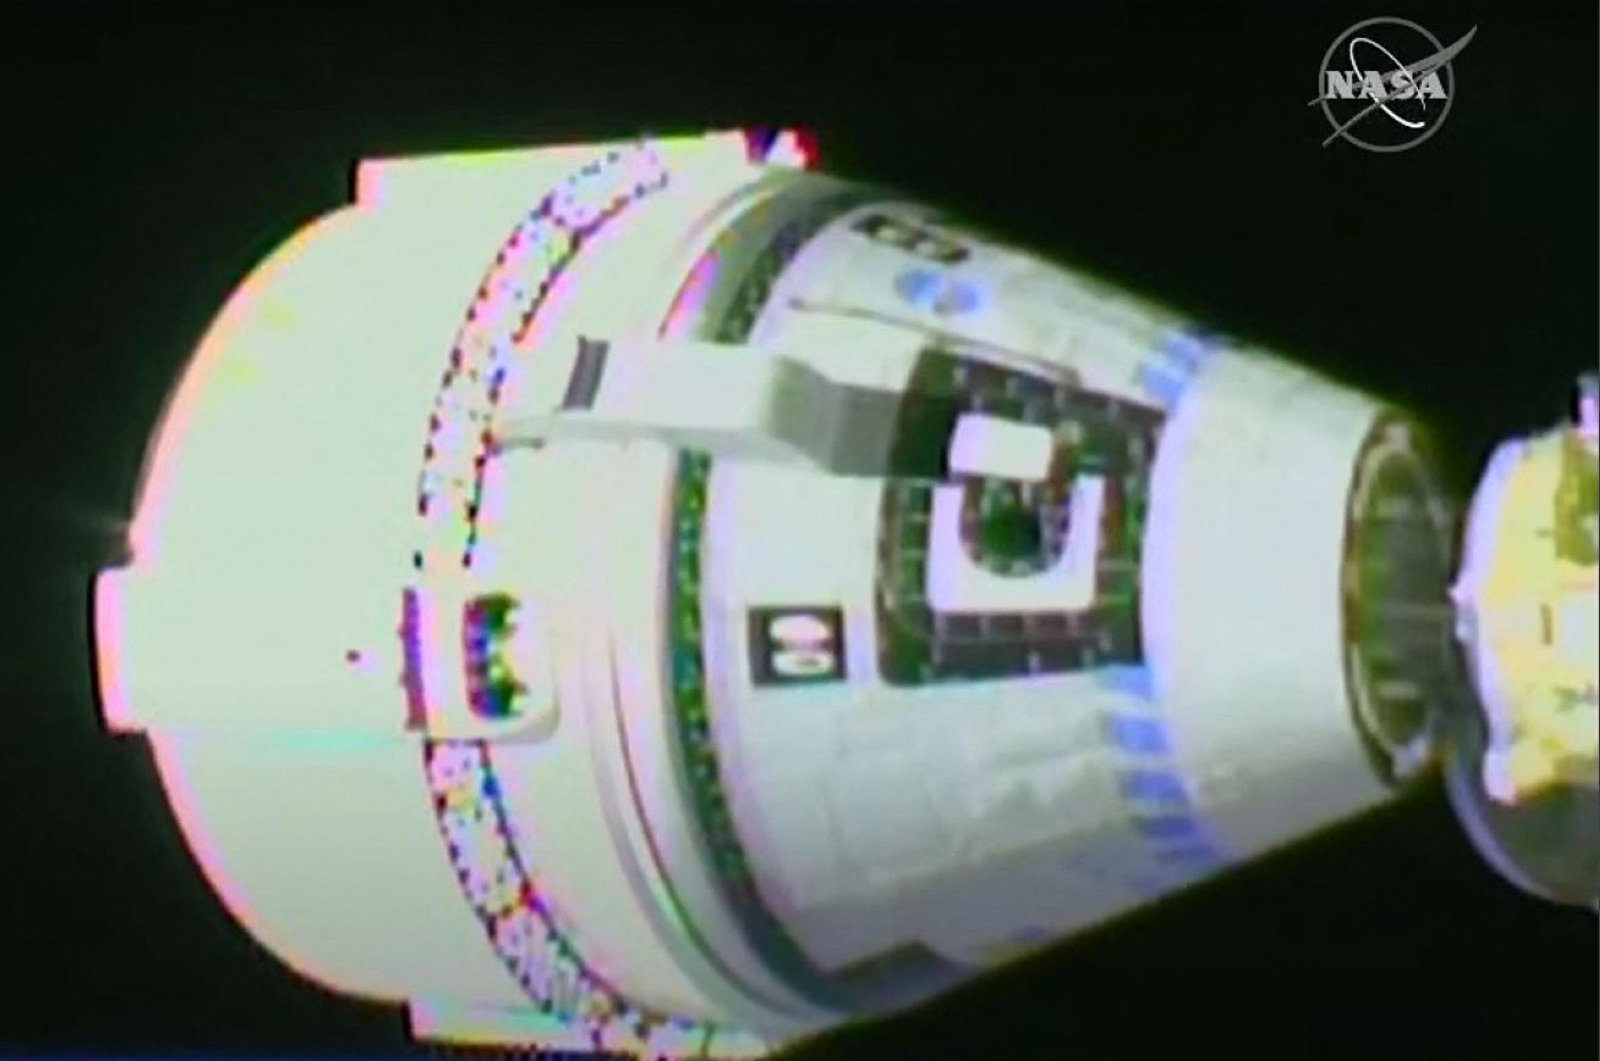 Pesawat luar angkasa Boeing Starliner tiba di ISS untuk pertama kalinya